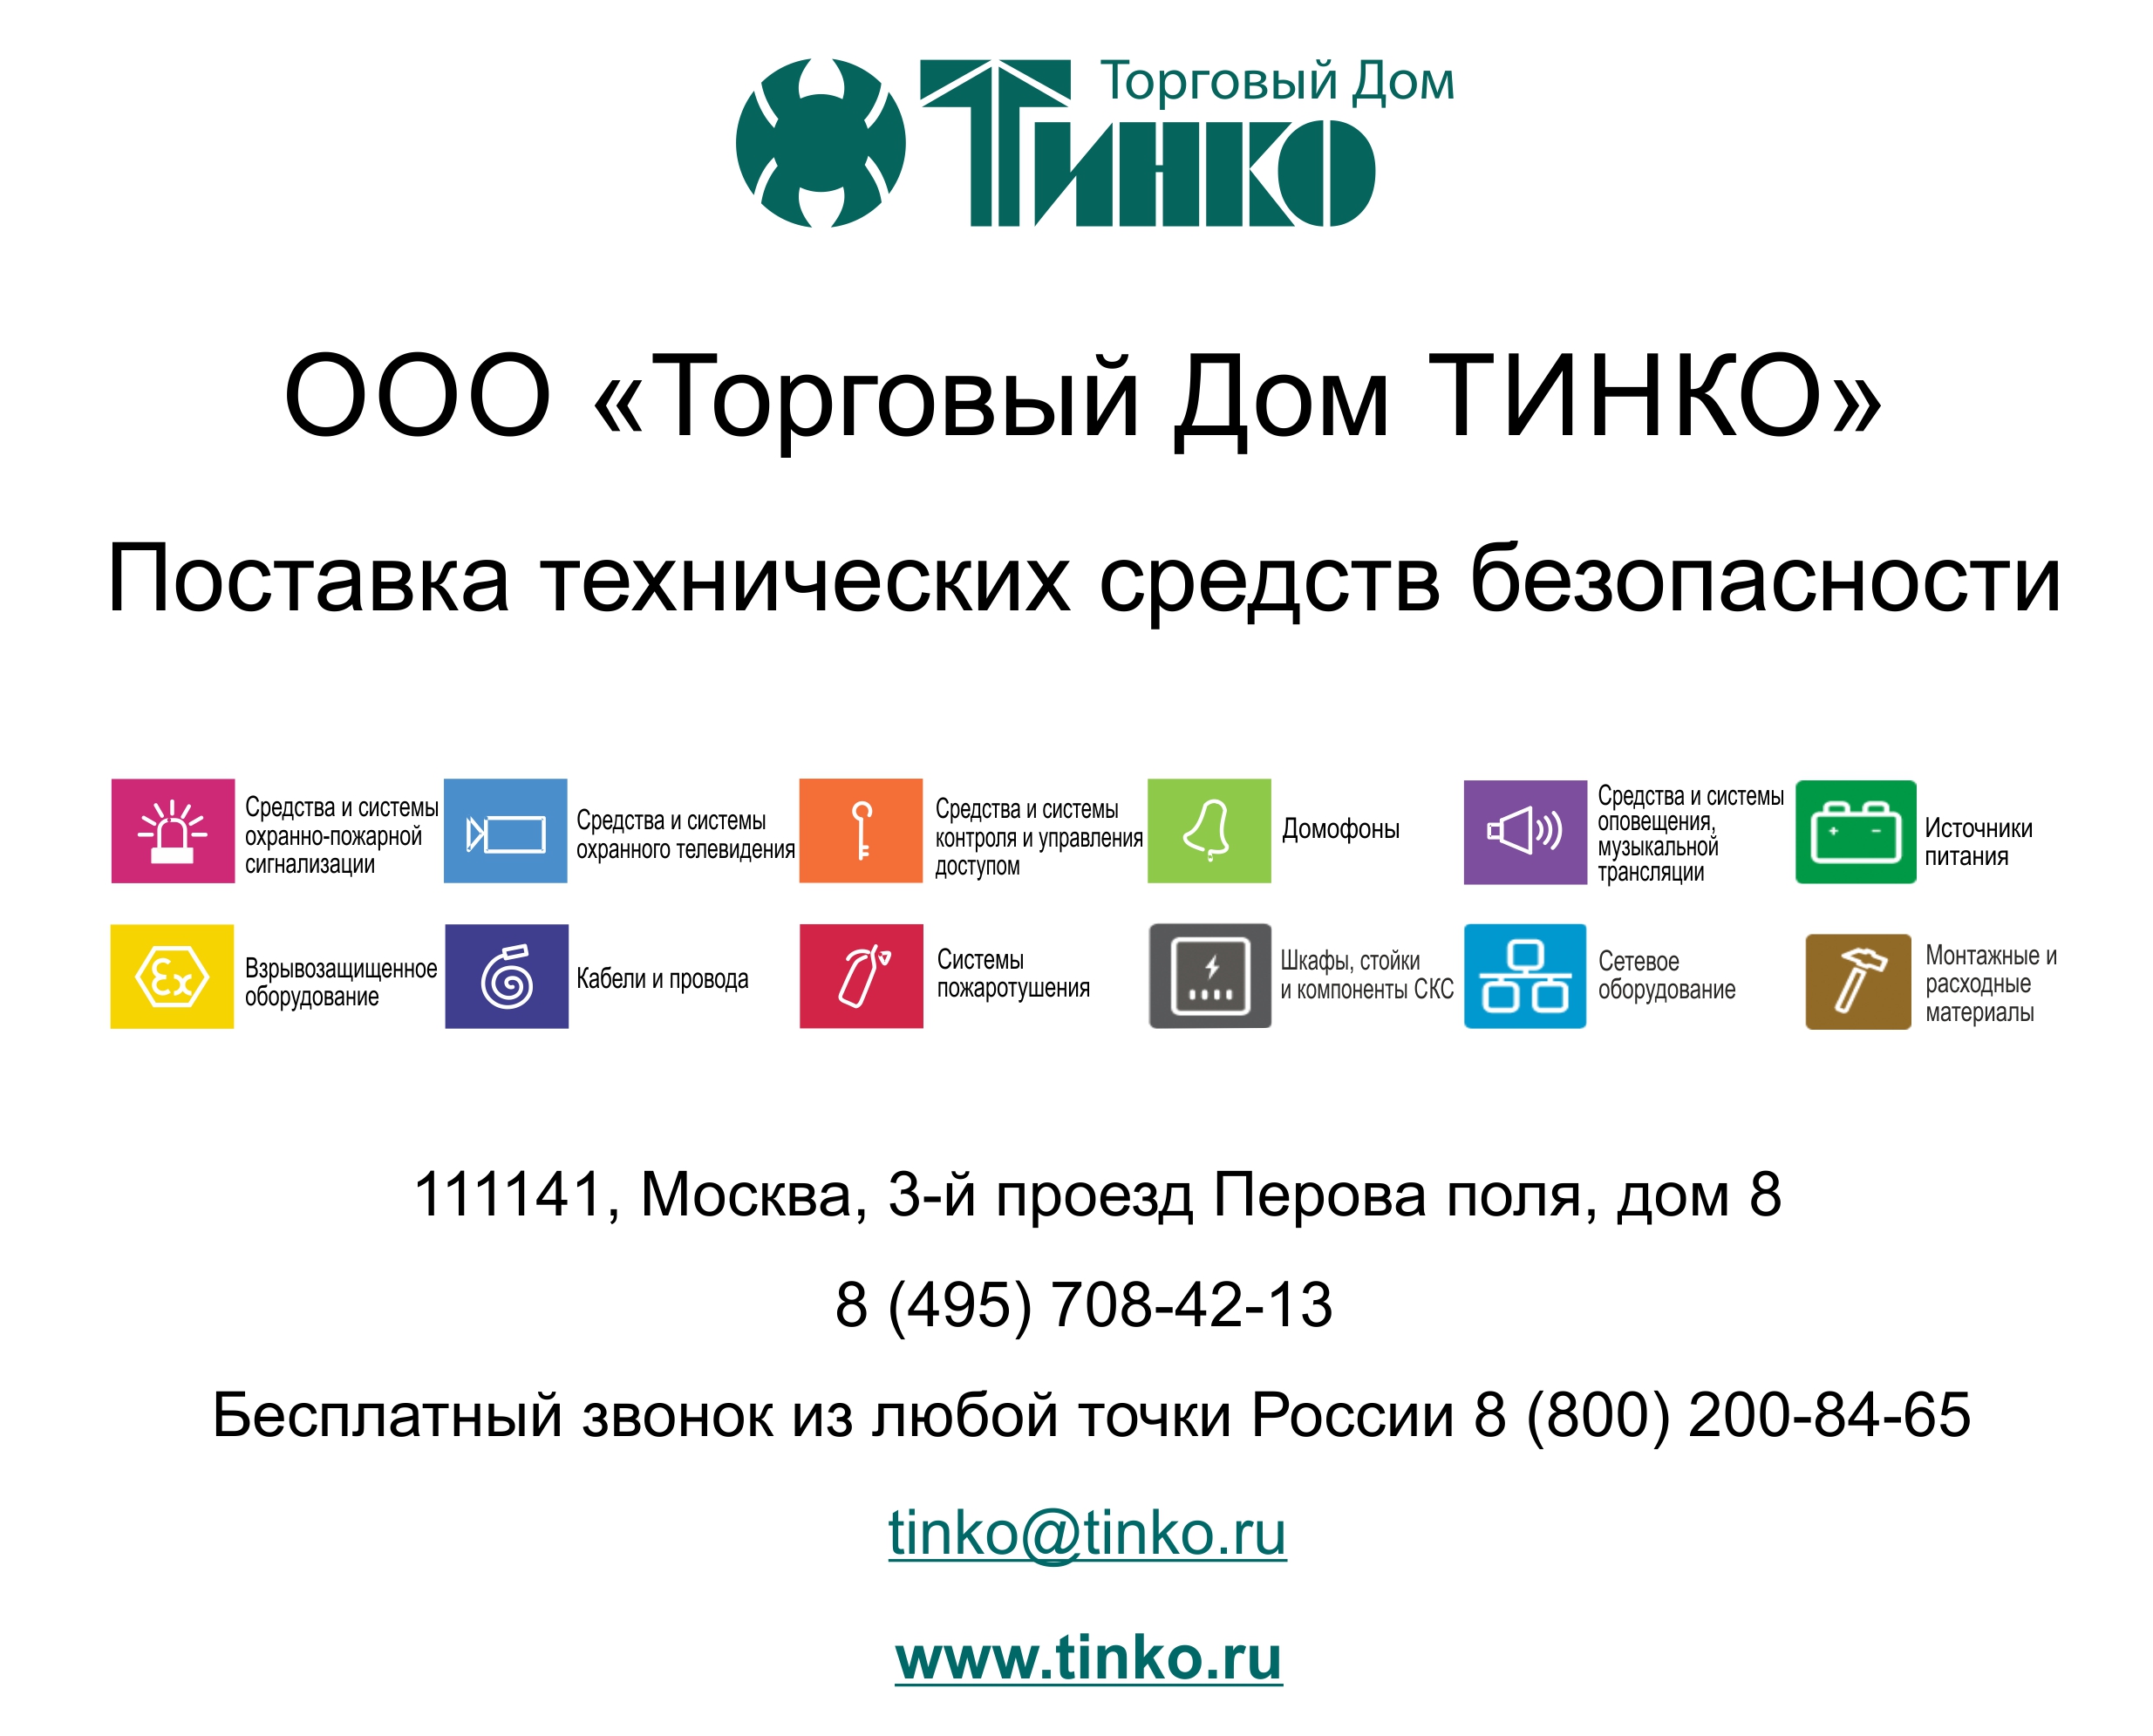 http://www.tinko.ru/